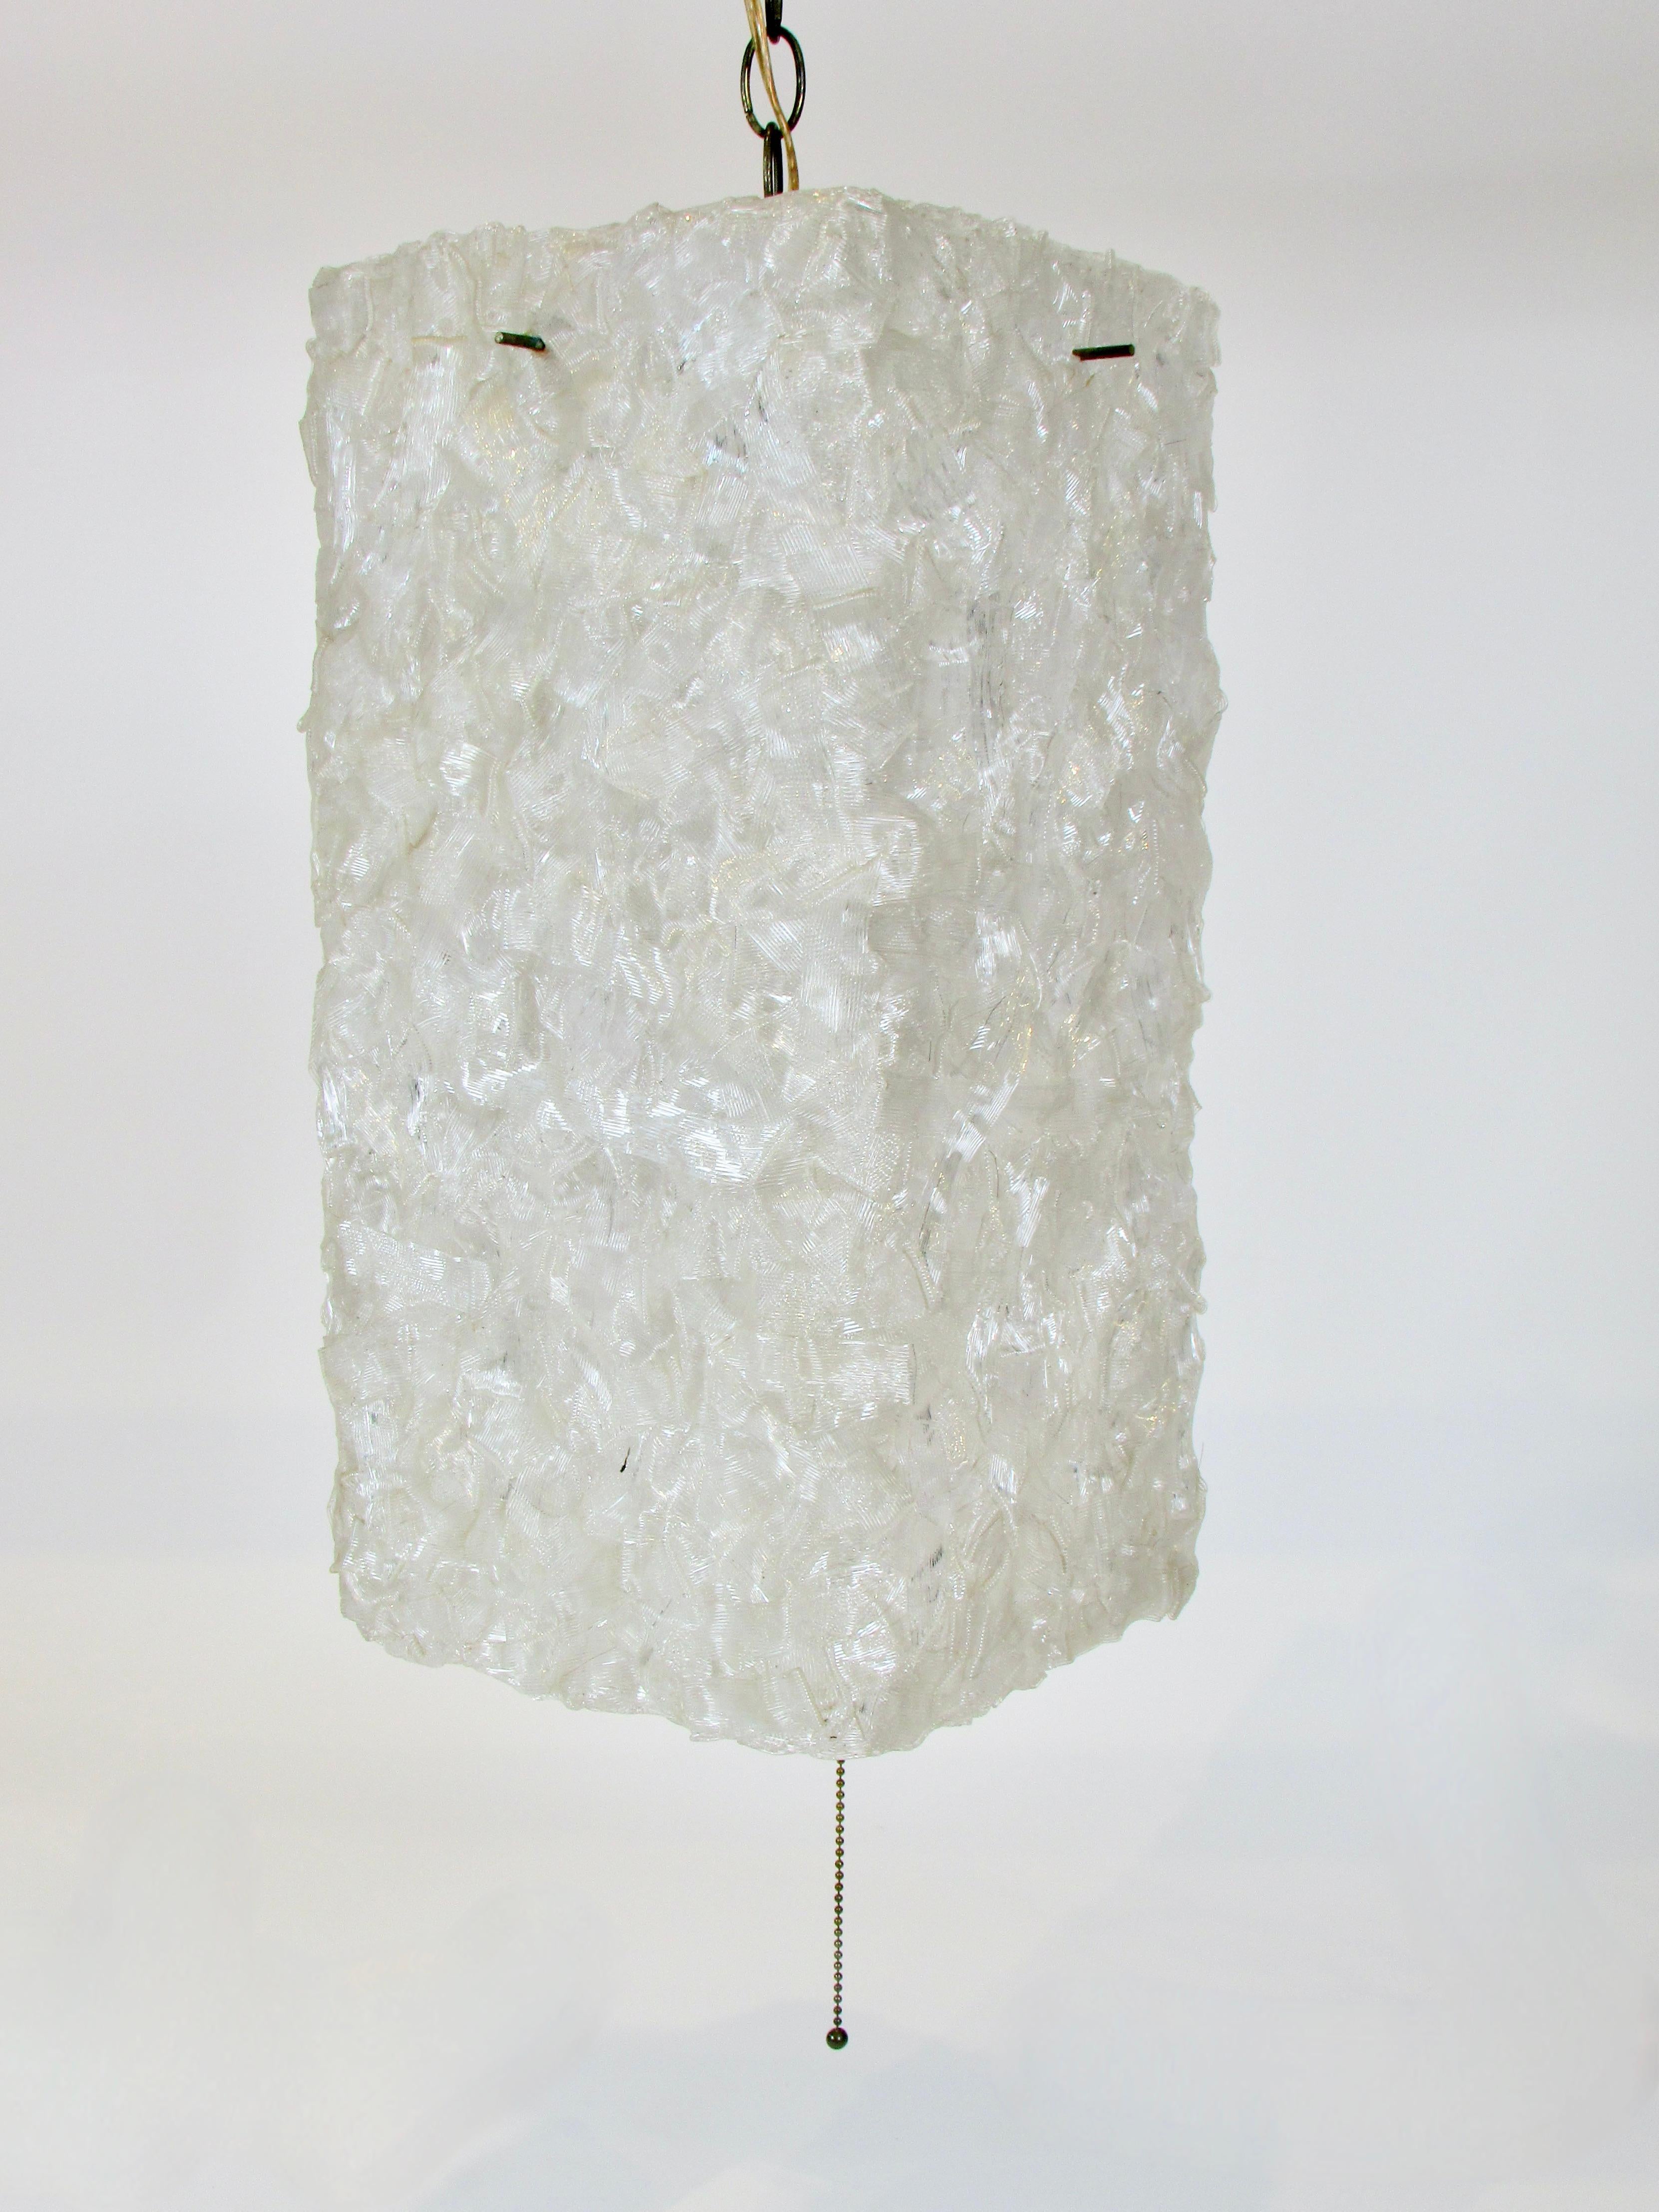 Américain Lampe carrée suspendue en plastique pressé blanc en forme de ruban en vente